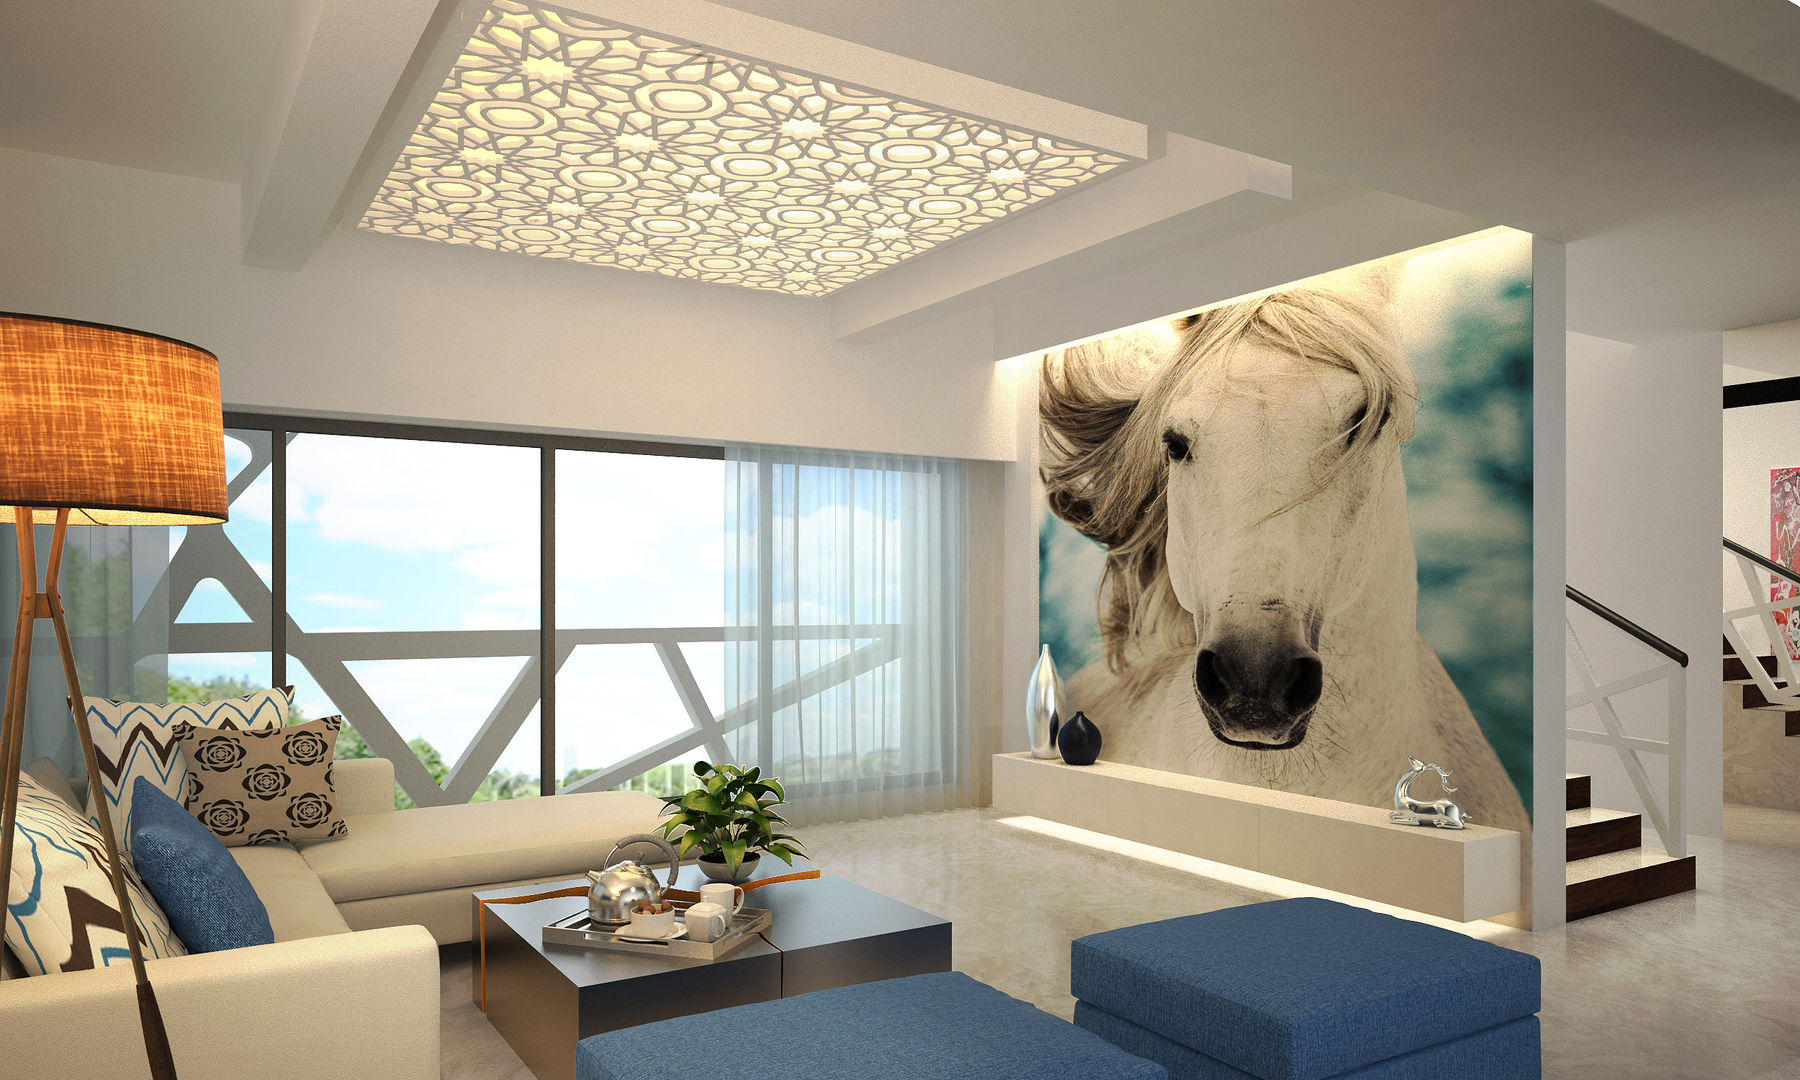 MODERN GREEK THEMED BUNGALOW SCHEME,KHANDALA, AIS Designs AIS Designs Living room